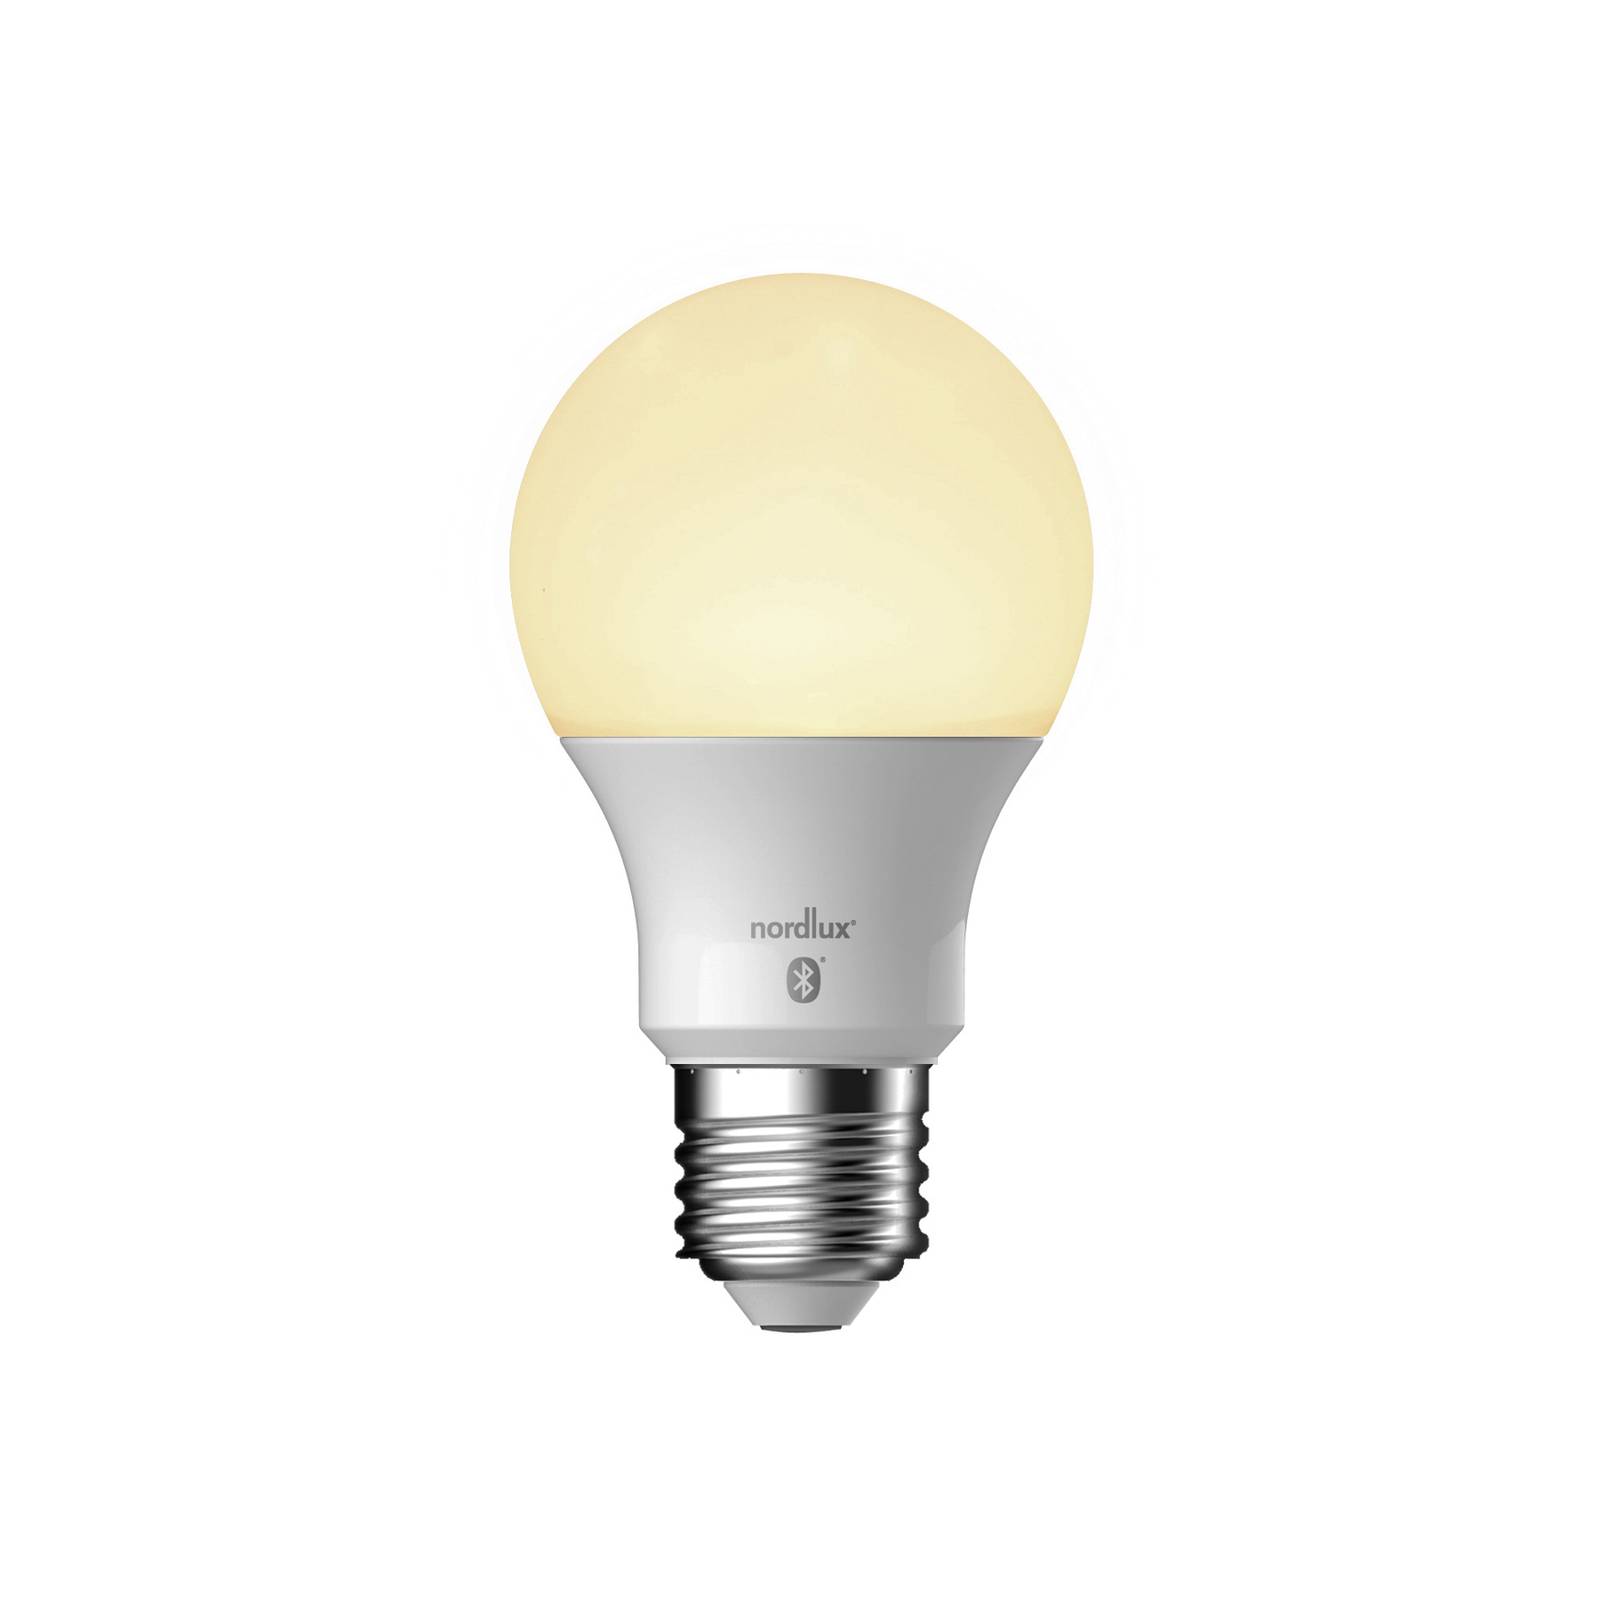 Nordlux Ampoule LED Smart E27 A60 Outdoor 6,5W CCT 806lm